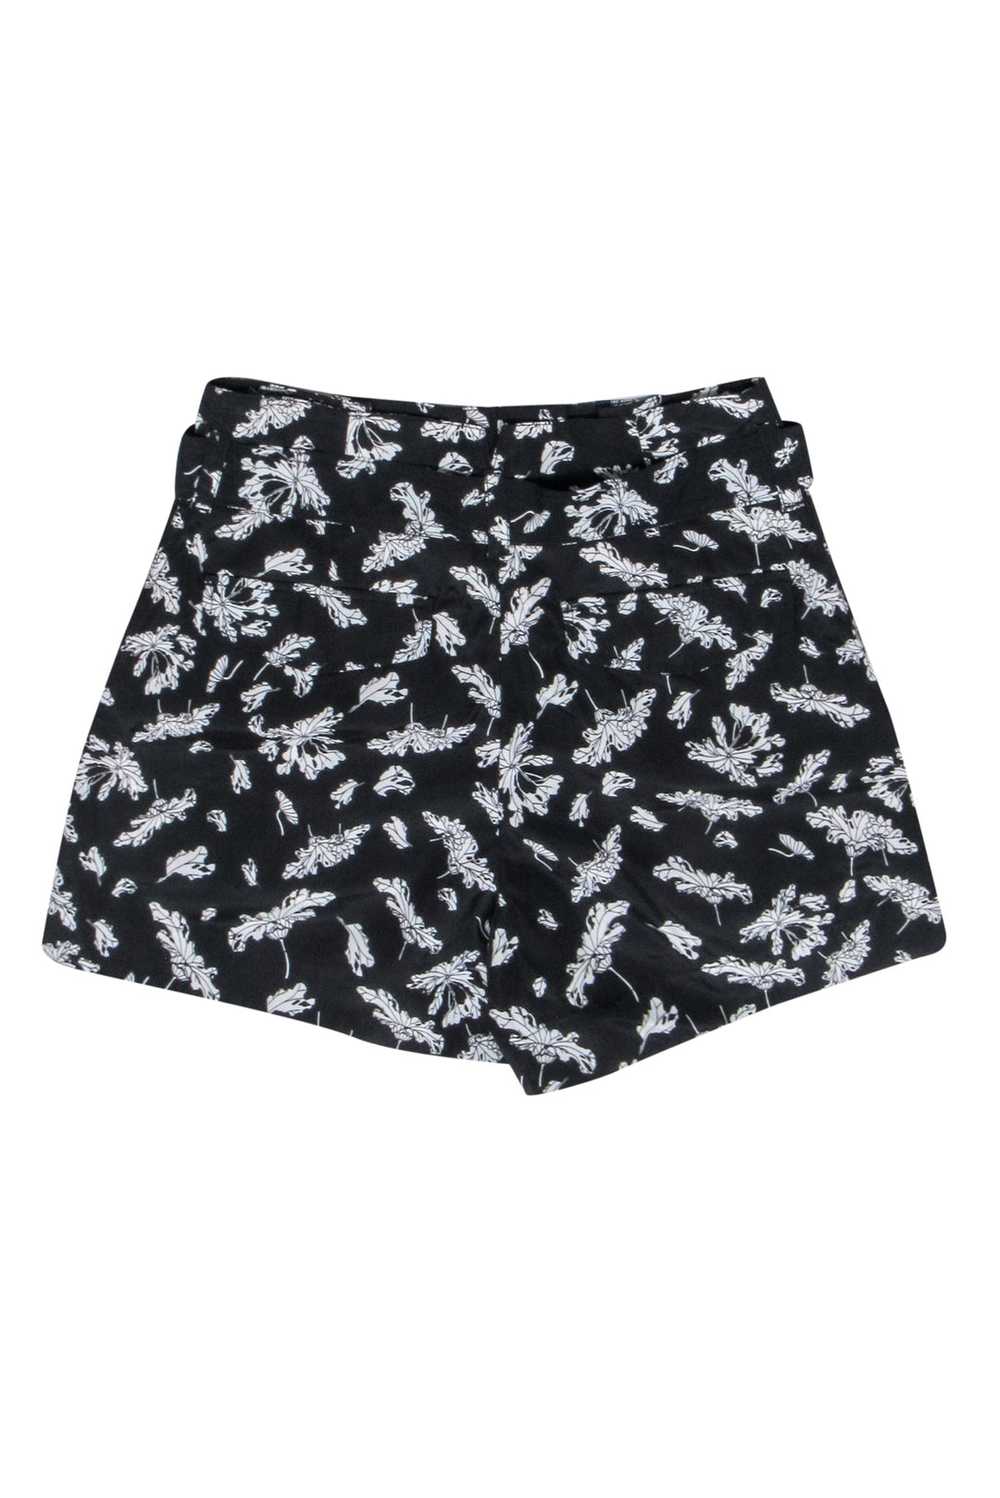 Rag & Bone - Black & White Floral Belted Shorts S… - image 2